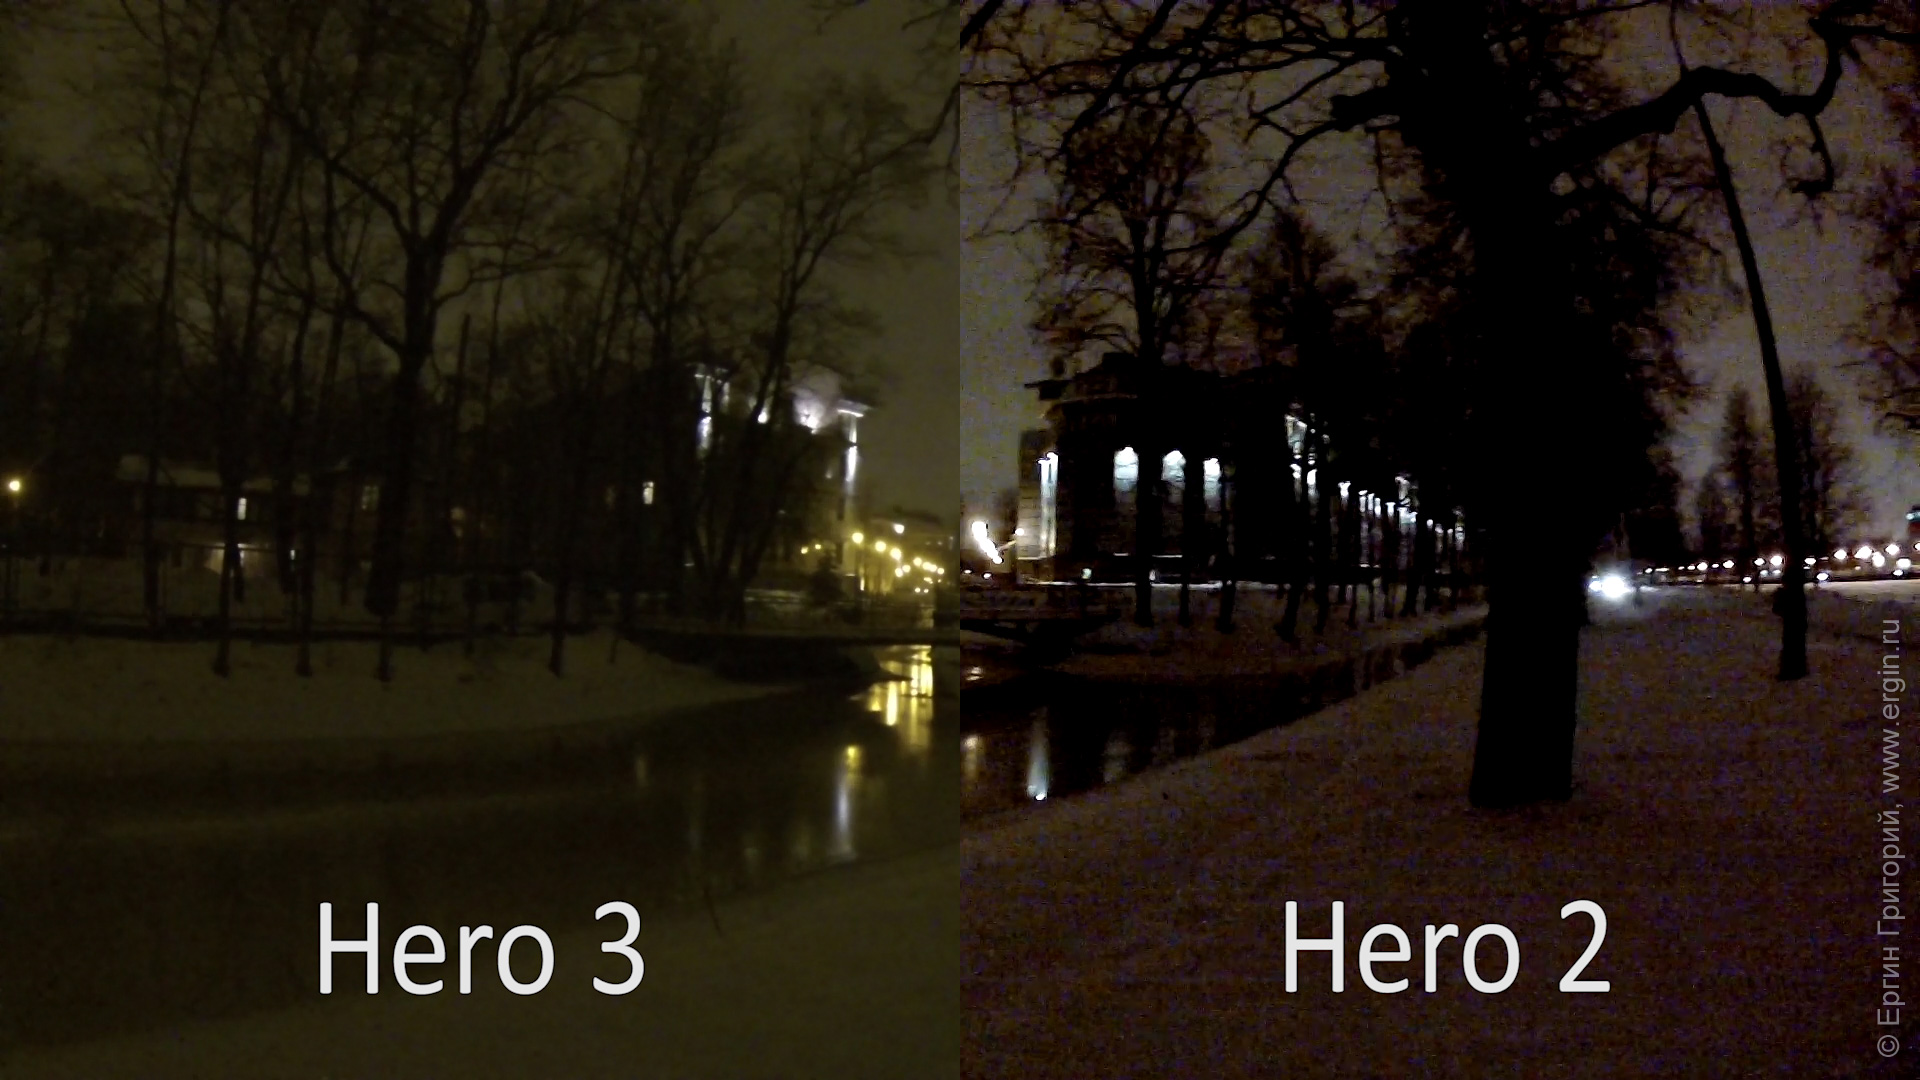 Почти полная темнота сильные шумы у Hero 2, Hero 3 выигрывает по качеству